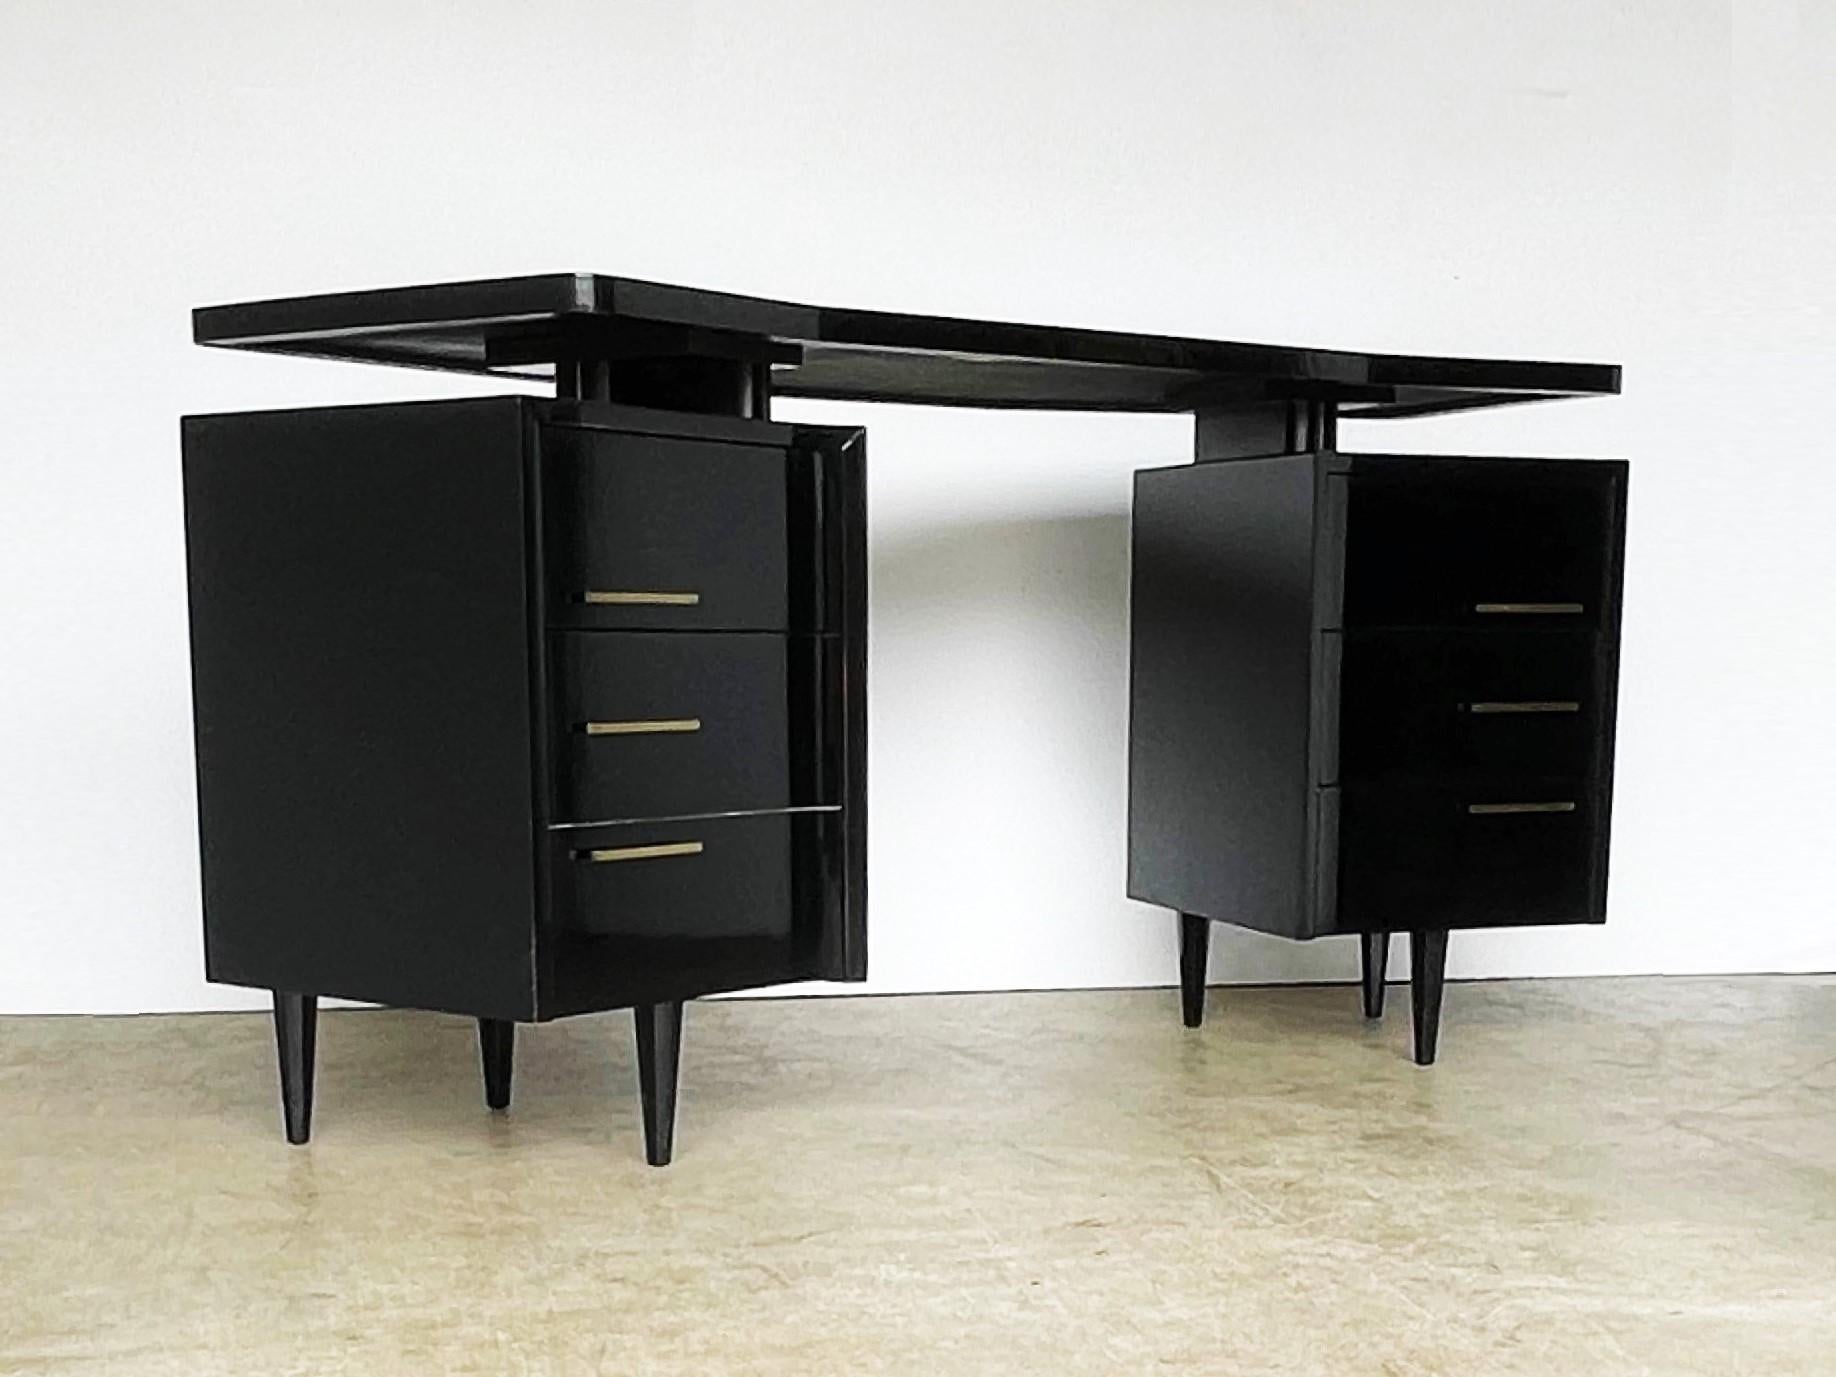 Gestalten Sie Ihr Zimmer mit diesem beeindruckenden Schreibtisch. Dieser ungewöhnliche Schreibtisch ist vom Art-Déco-Design inspiriert. Das geschwungene Design verleiht ihm einen besonderen Reiz, und die große, schwebende Arbeitsfläche ist ein